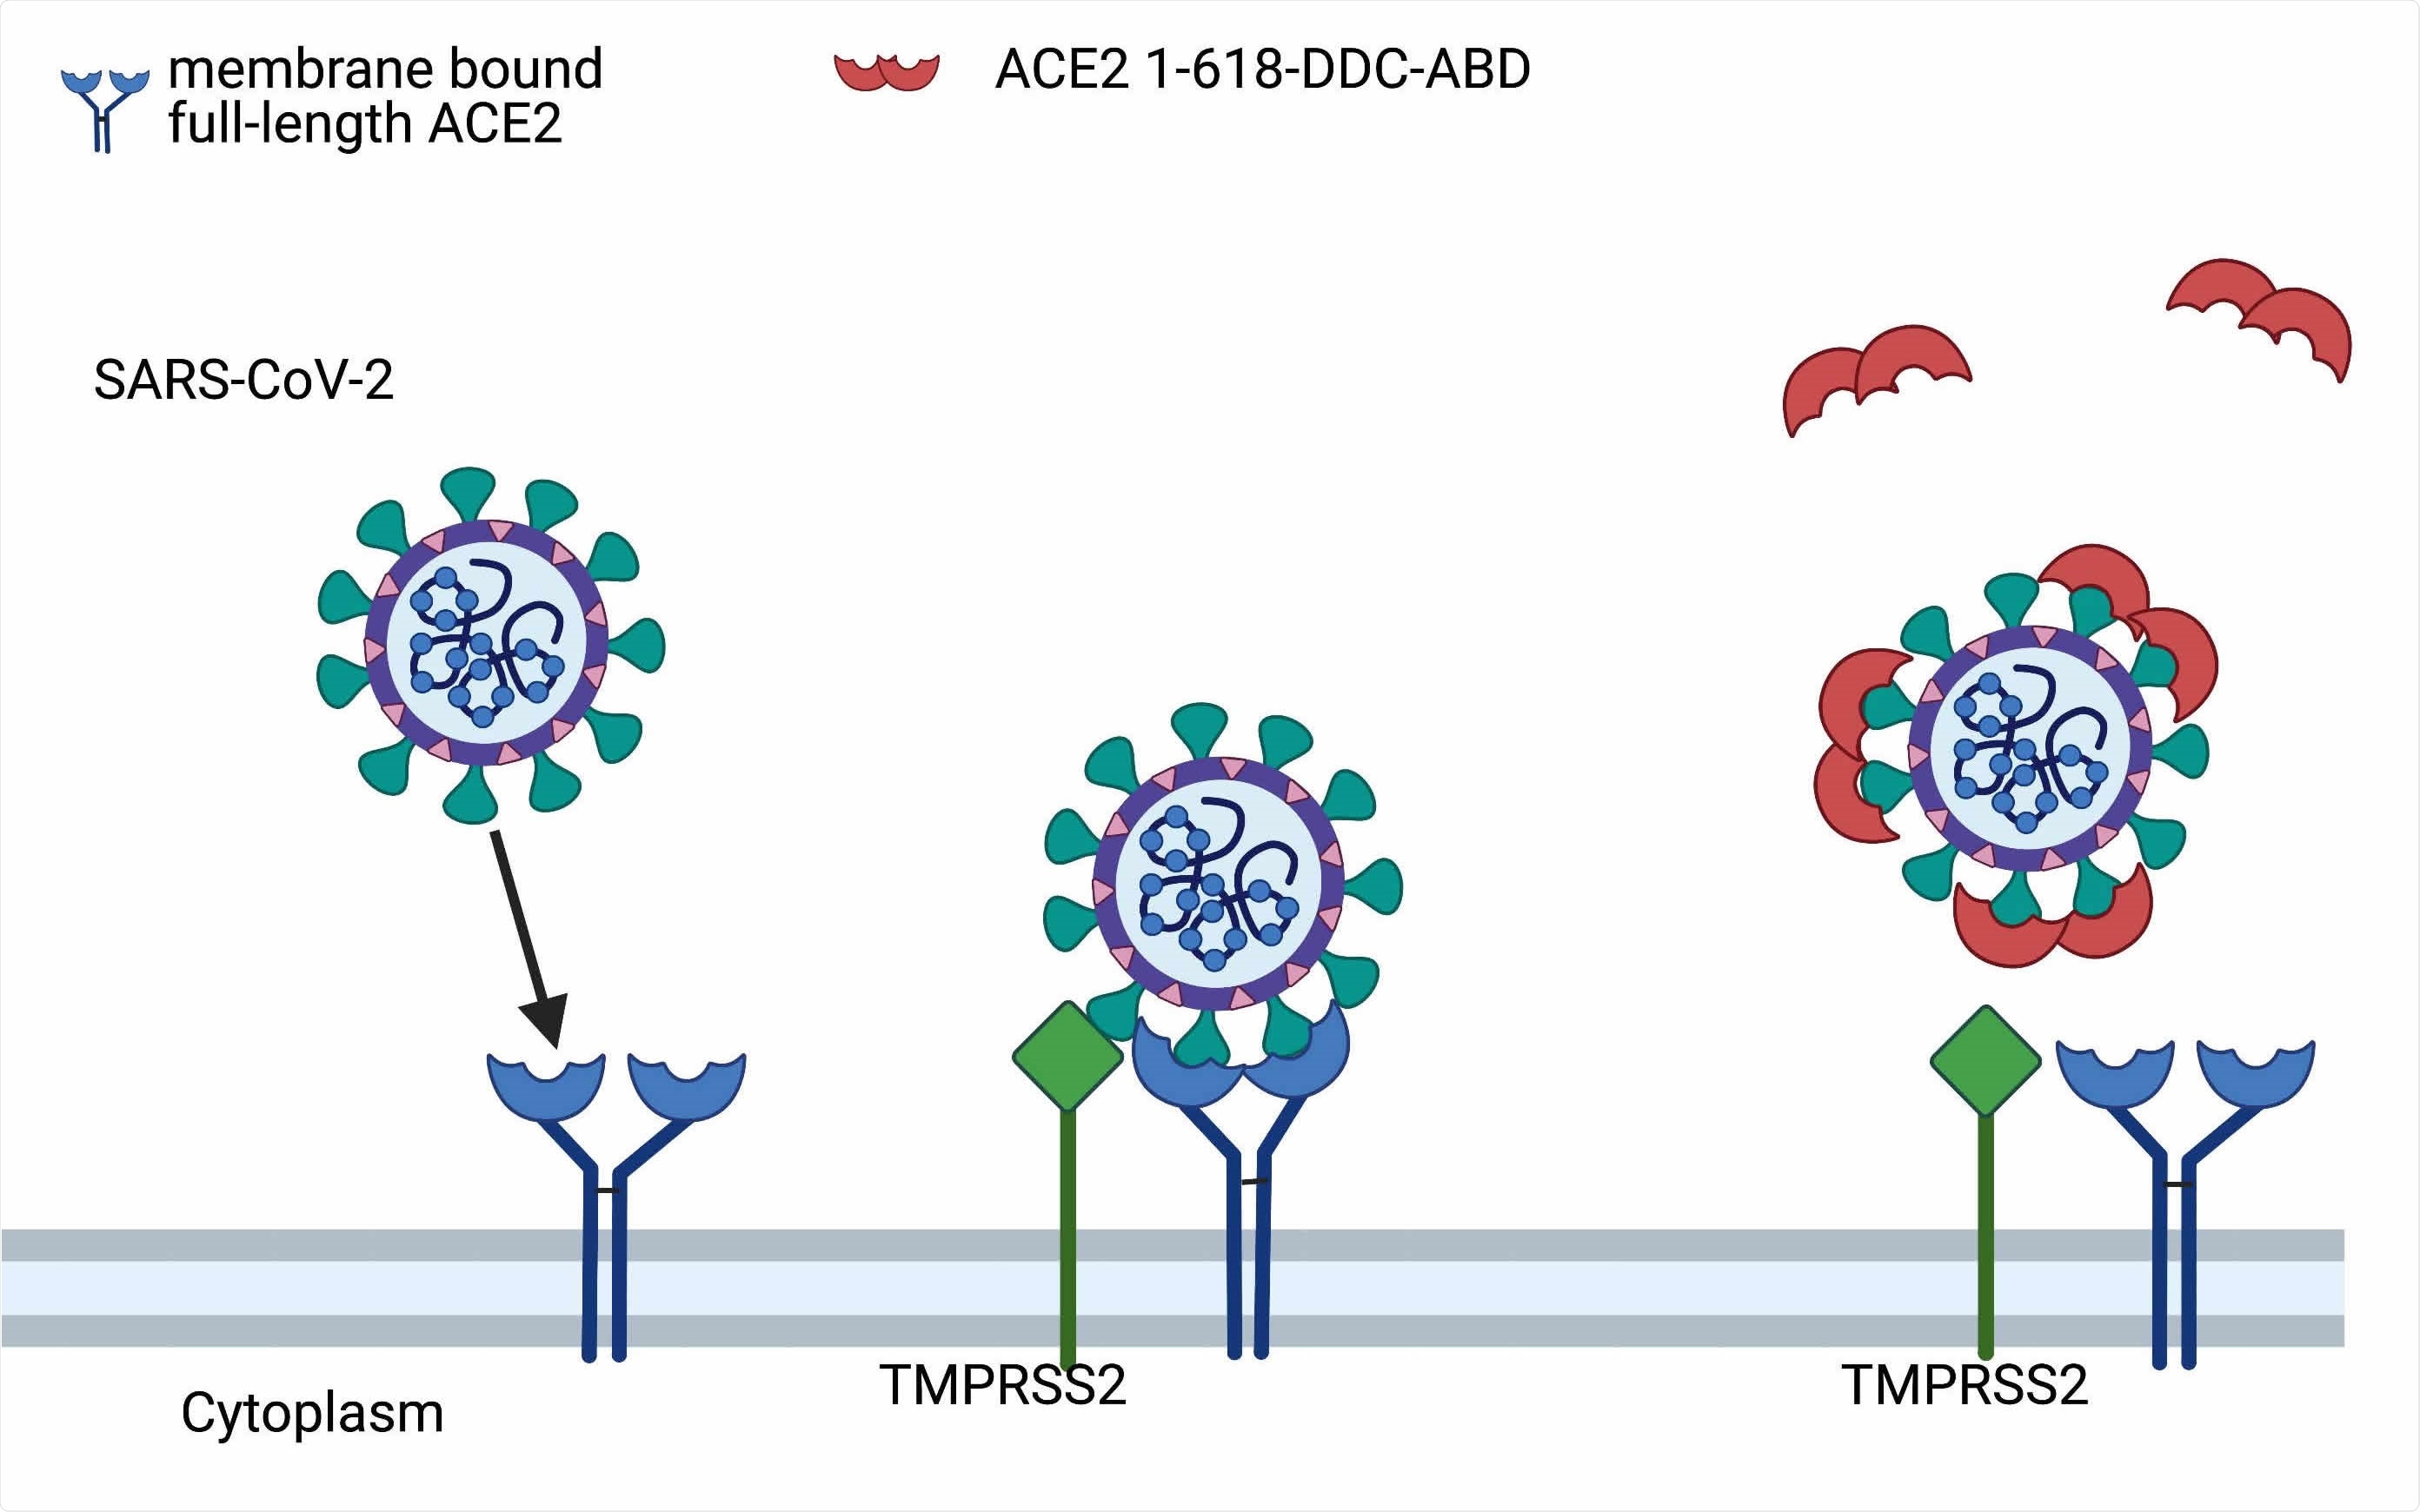 Presunto mecanismo de acción para ACE2 1-618-DDC-ABD.  El ACE2 1-618-DDC-ABD administrado (semicírculos rojos) se une al SARS-CoV-2 para actuar como un señuelo para inhibir la unión del SARS-CoV-2 a los receptores ACE2 de longitud completa unidos a la membrana (azul) .  Esto evita la absorción del compuesto ACE2-SARS-CoV-2 activado por TMPRSS2 (verde).  Modificado de Davidson et al, Hypertension 2020 (10).  Fue creado con biorender.com.